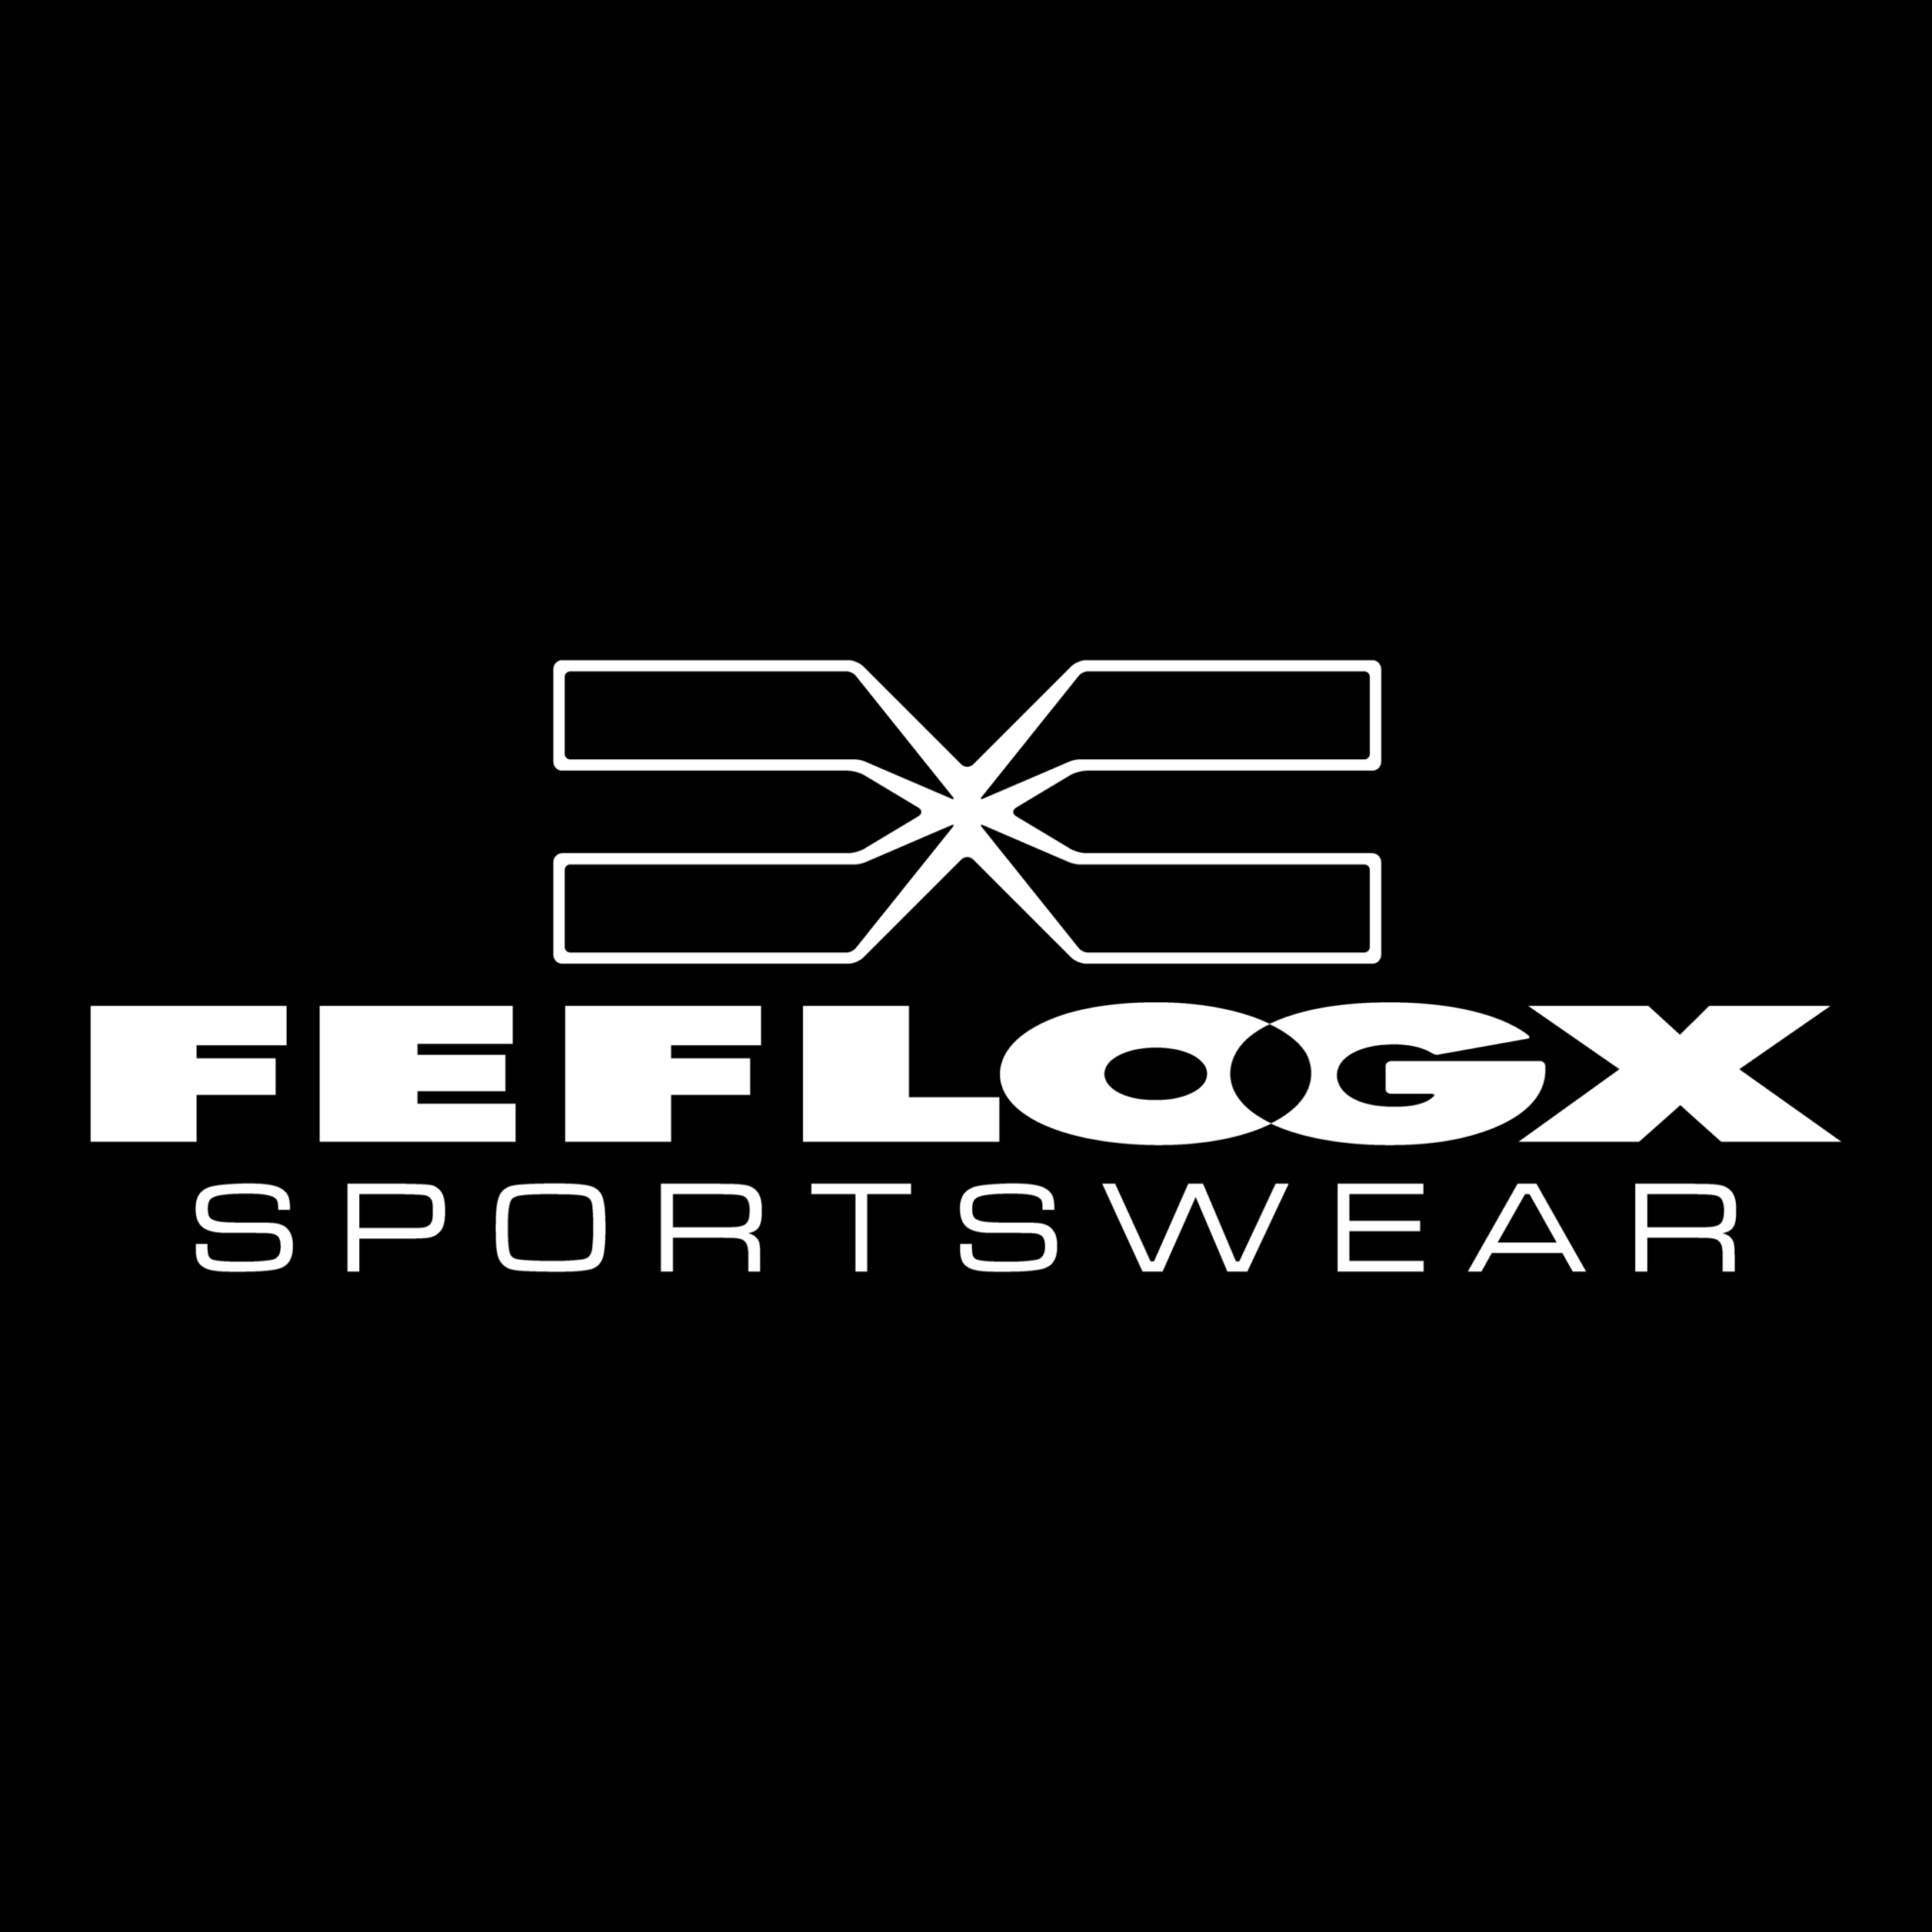 Bei FEFLOGX Sportswear